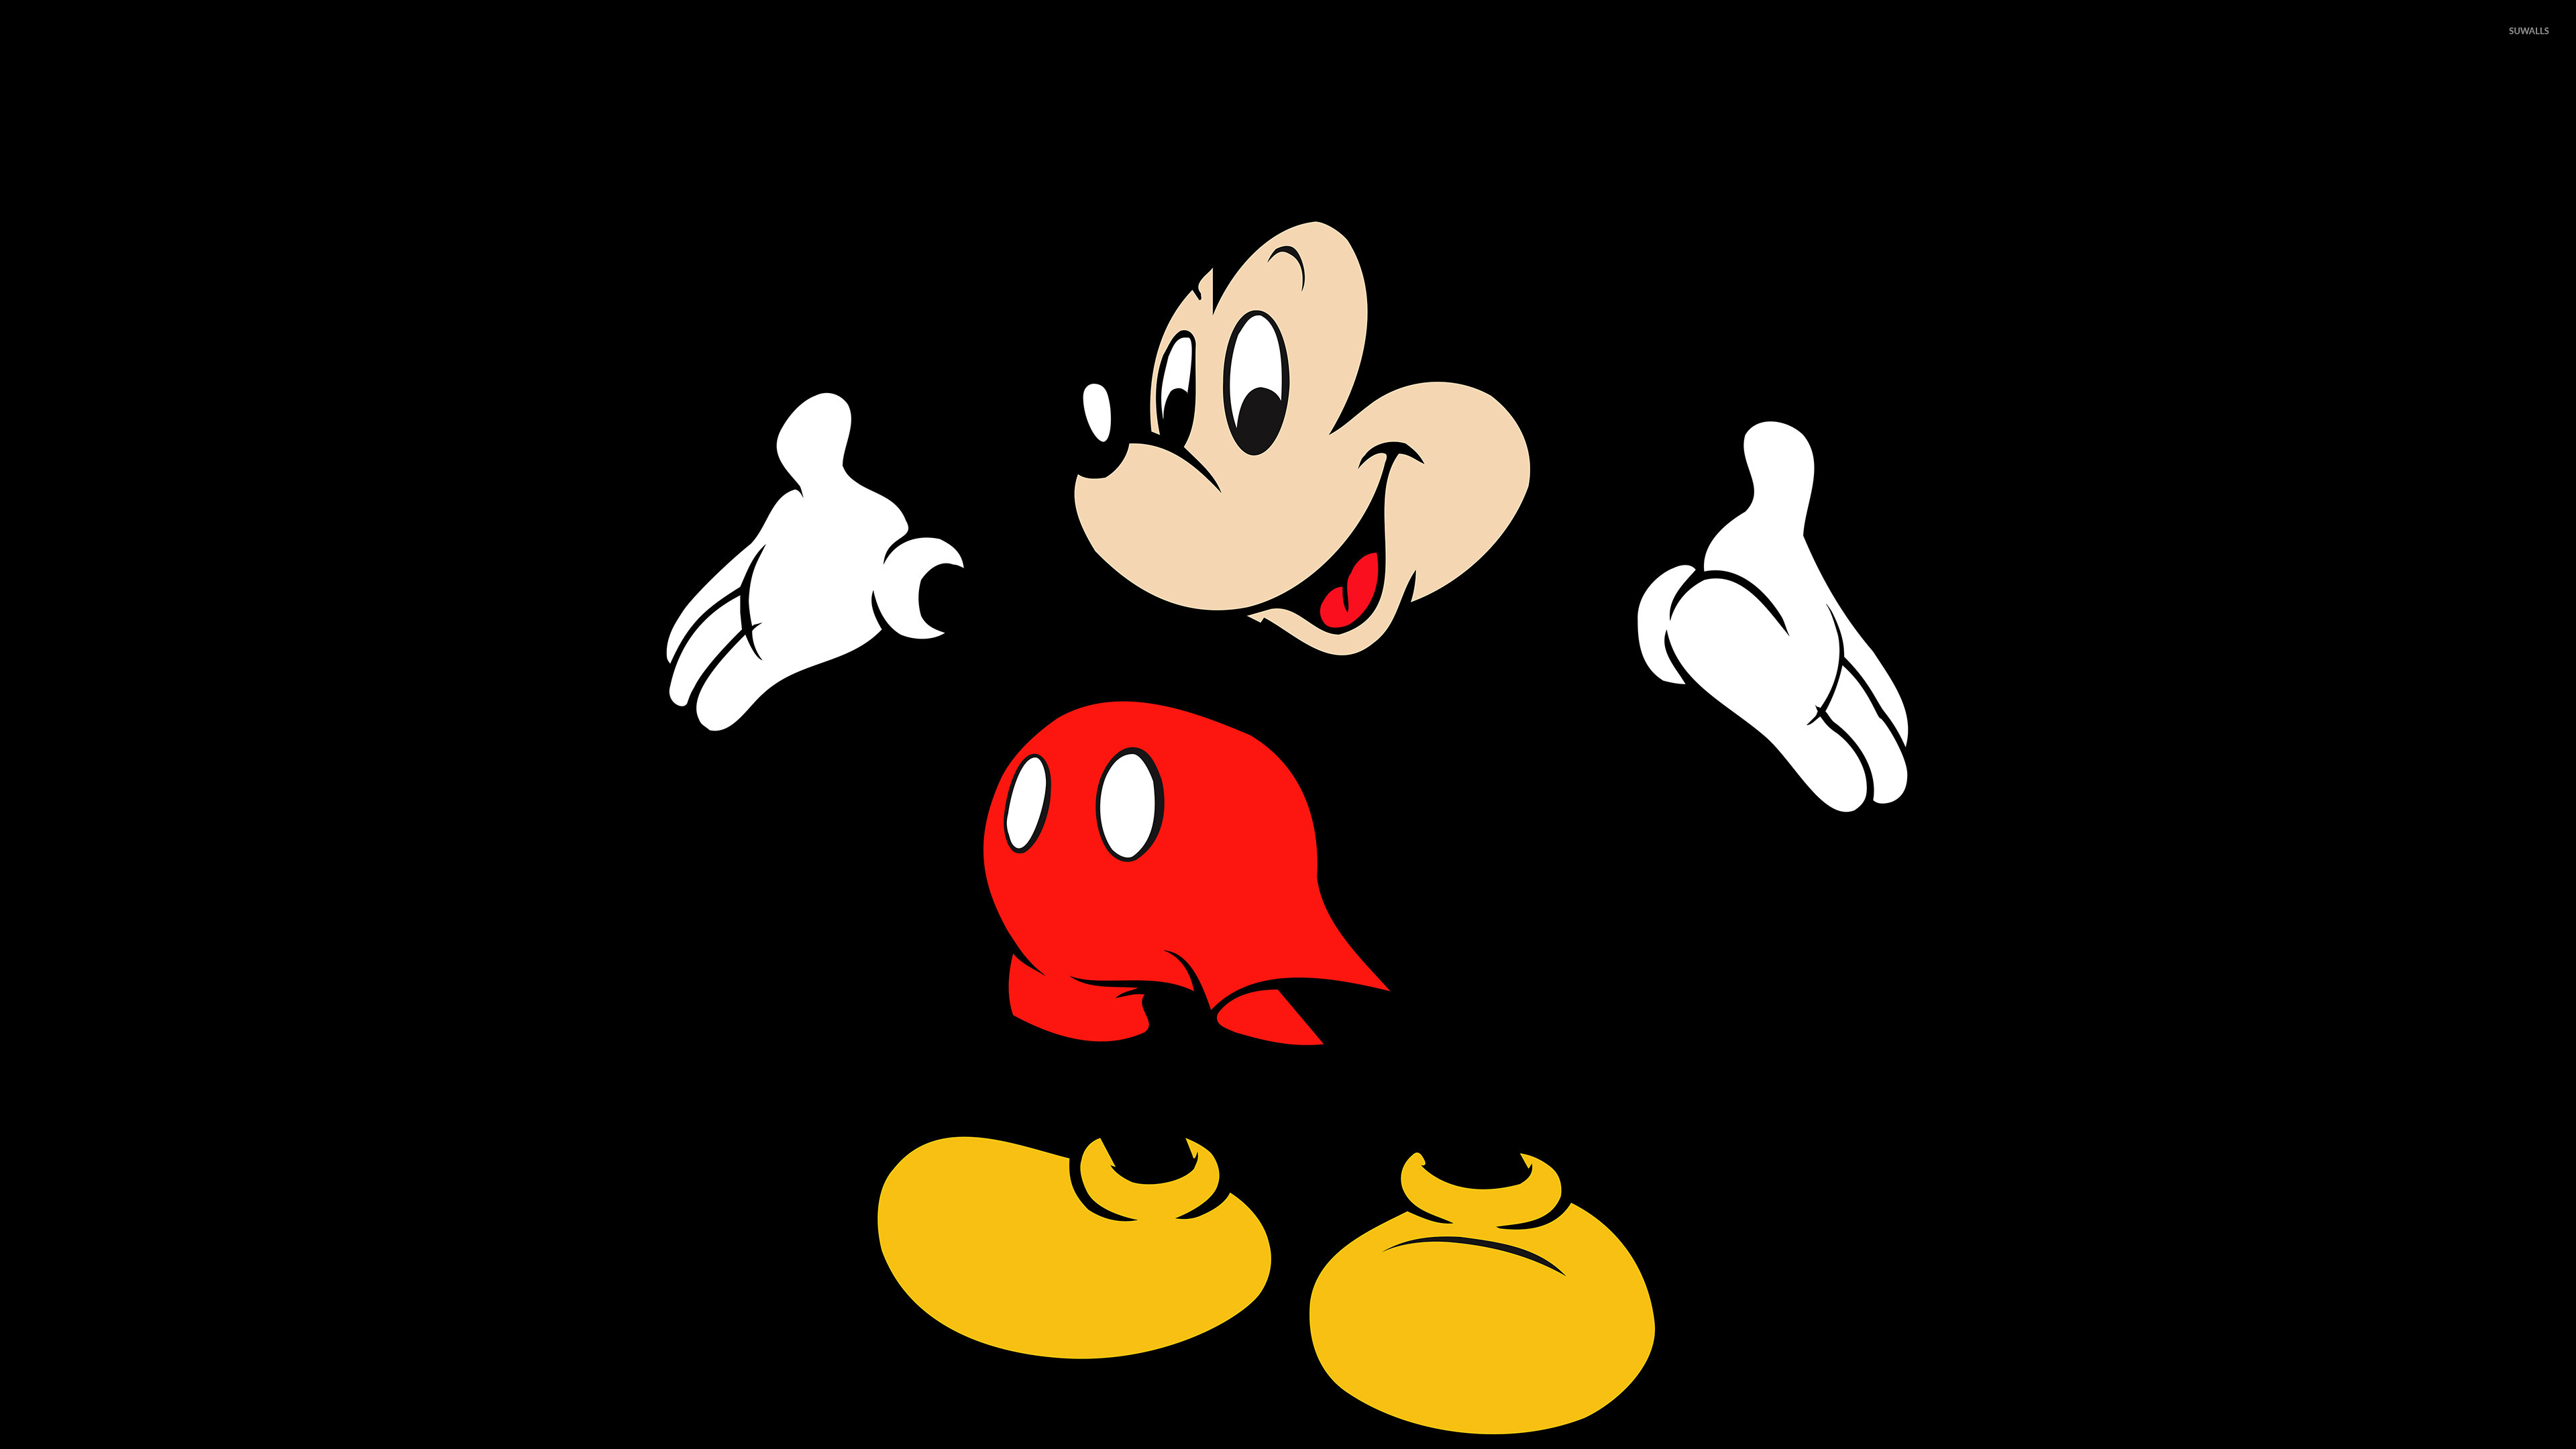 Disney Michey Mouse скачать